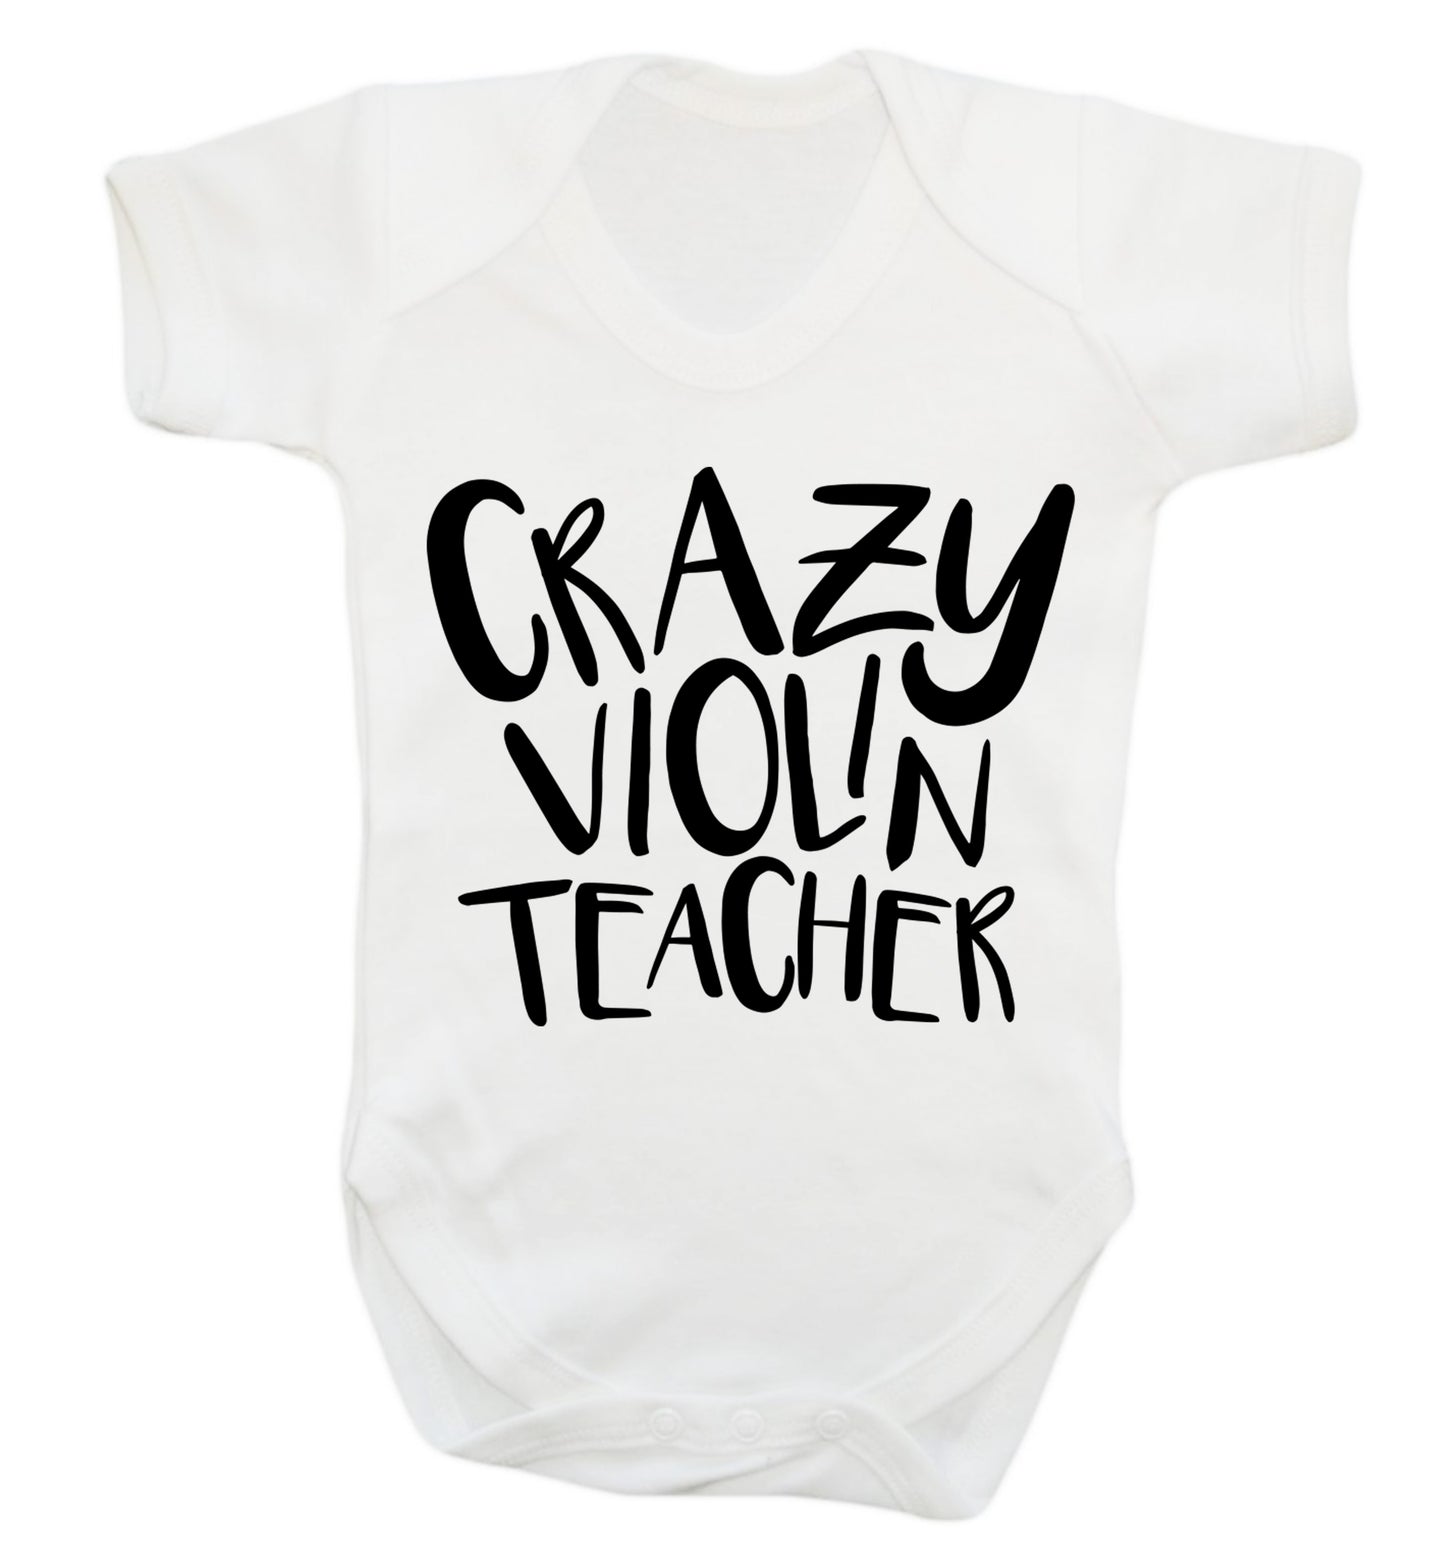 Crazy violin teacher Baby Vest white 18-24 months